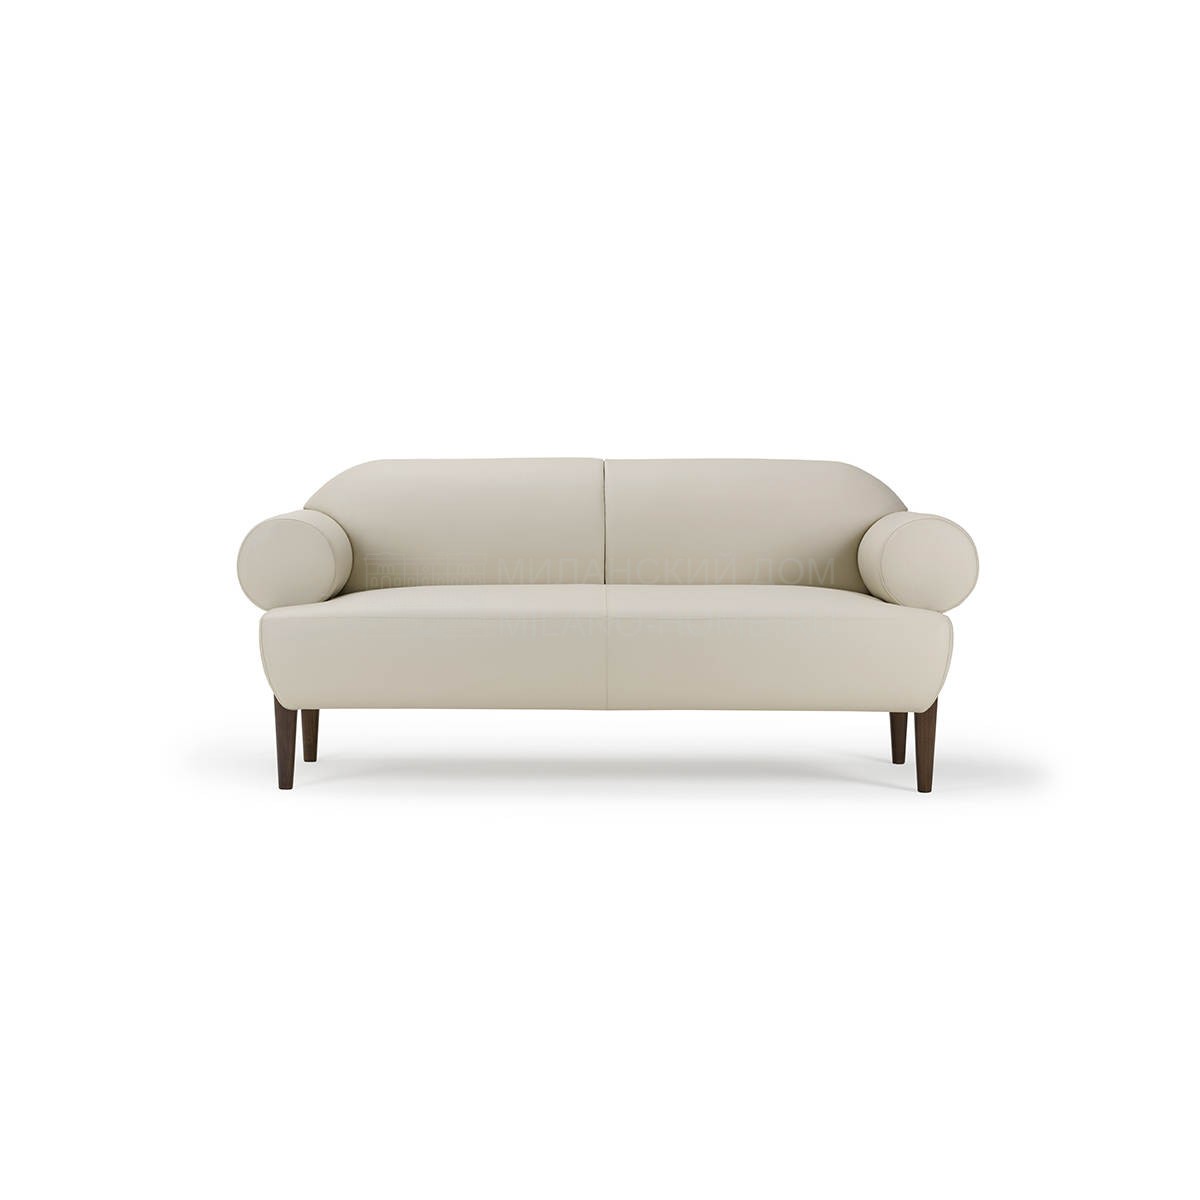 Прямой диван Silhouette sofa из Италии фабрики TURRI